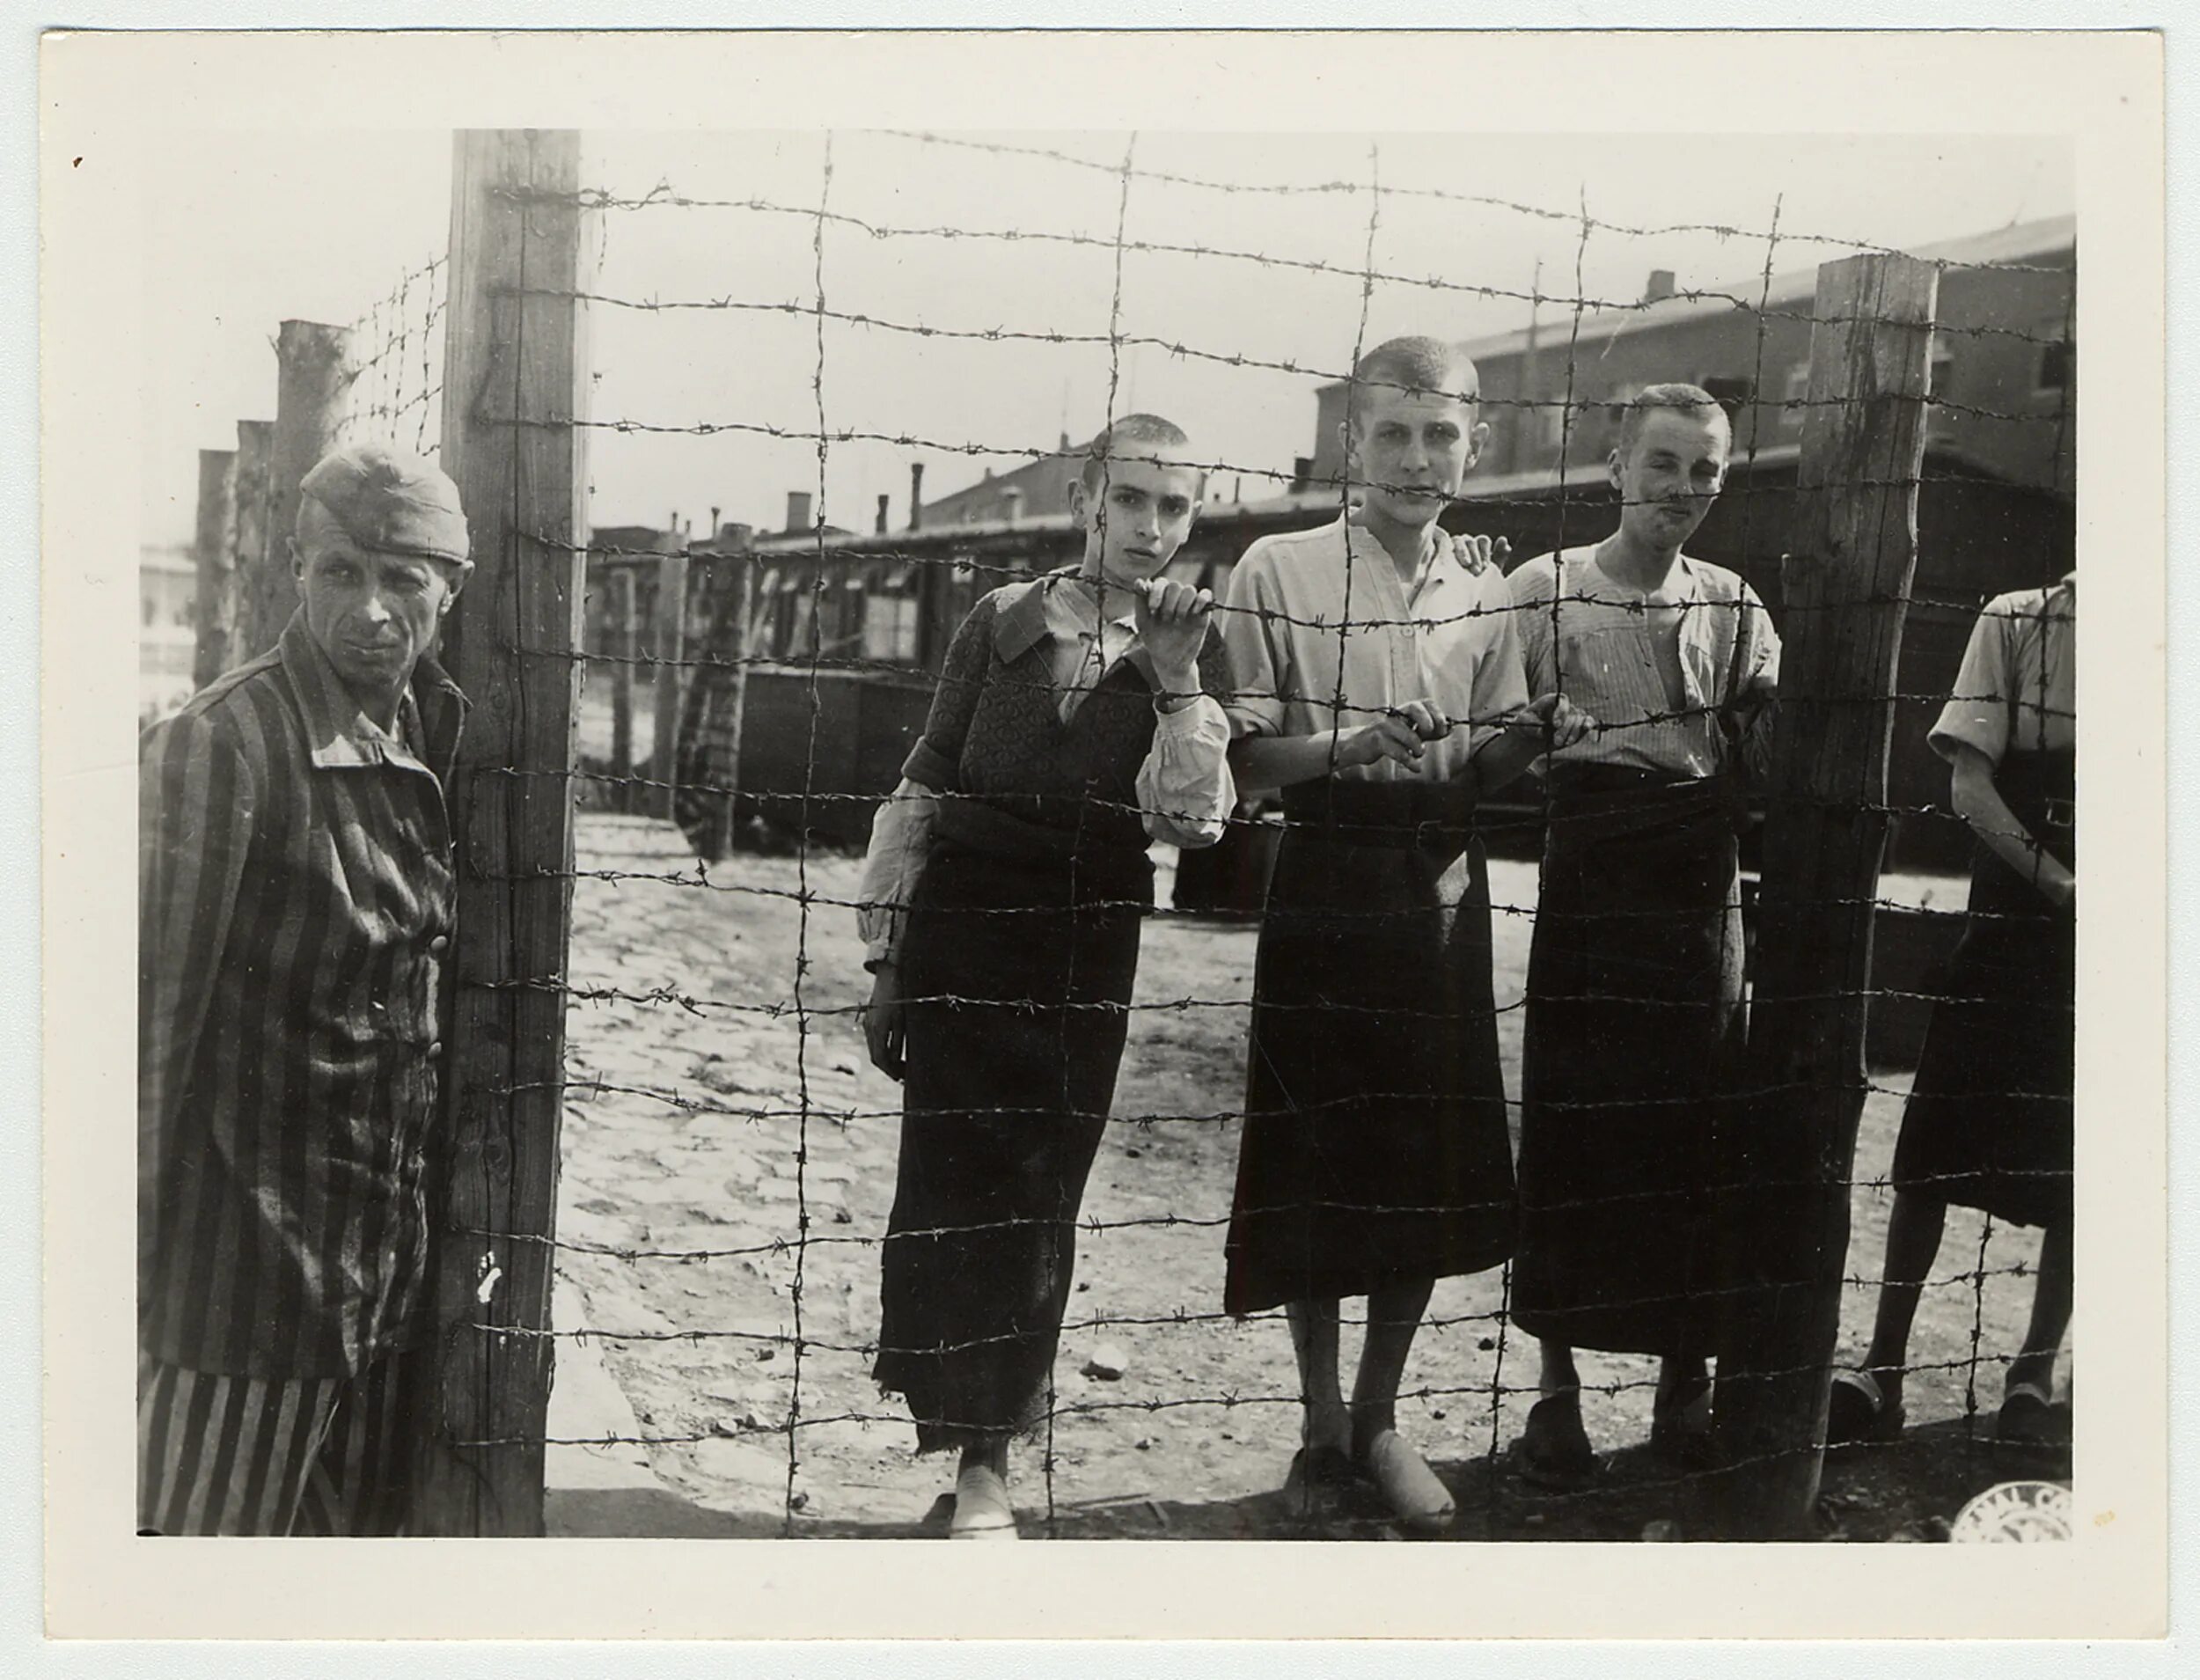 Узники концлагеря Бухенвальд. Бухенвальд  Майданек  Дахау Освенцим (Аушвиц-Биркенау) Саласпилс. Концентрационный лагерь Аушвиц дети. Бухенвальдский крепыш